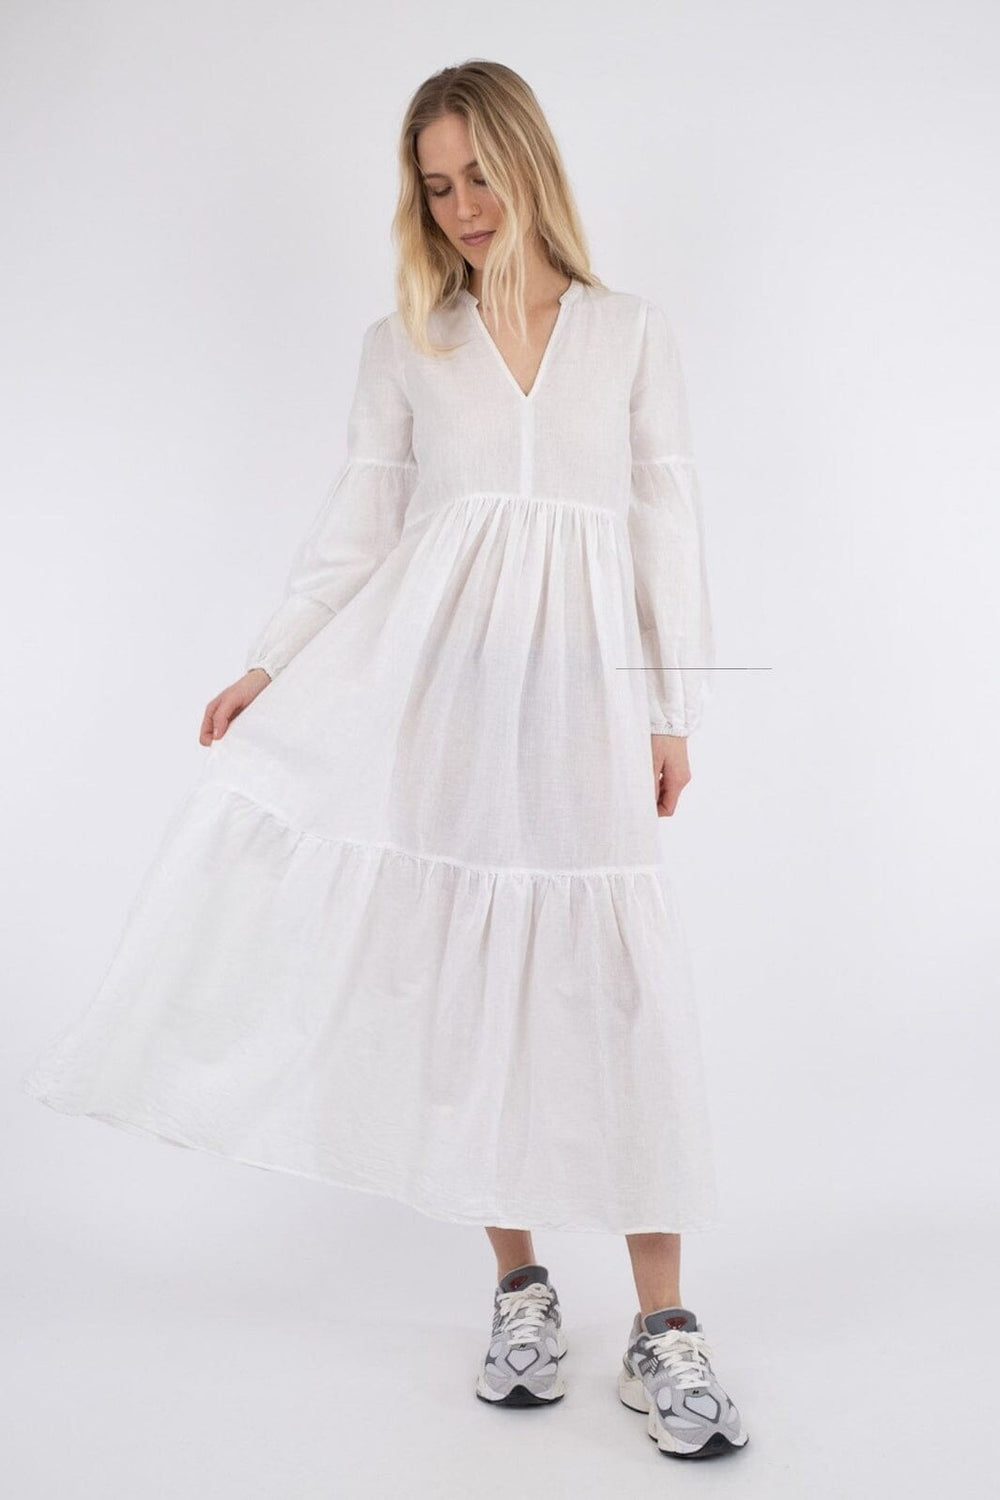 Neo Noir - Klaudia Linen Dress - White Kjoler 